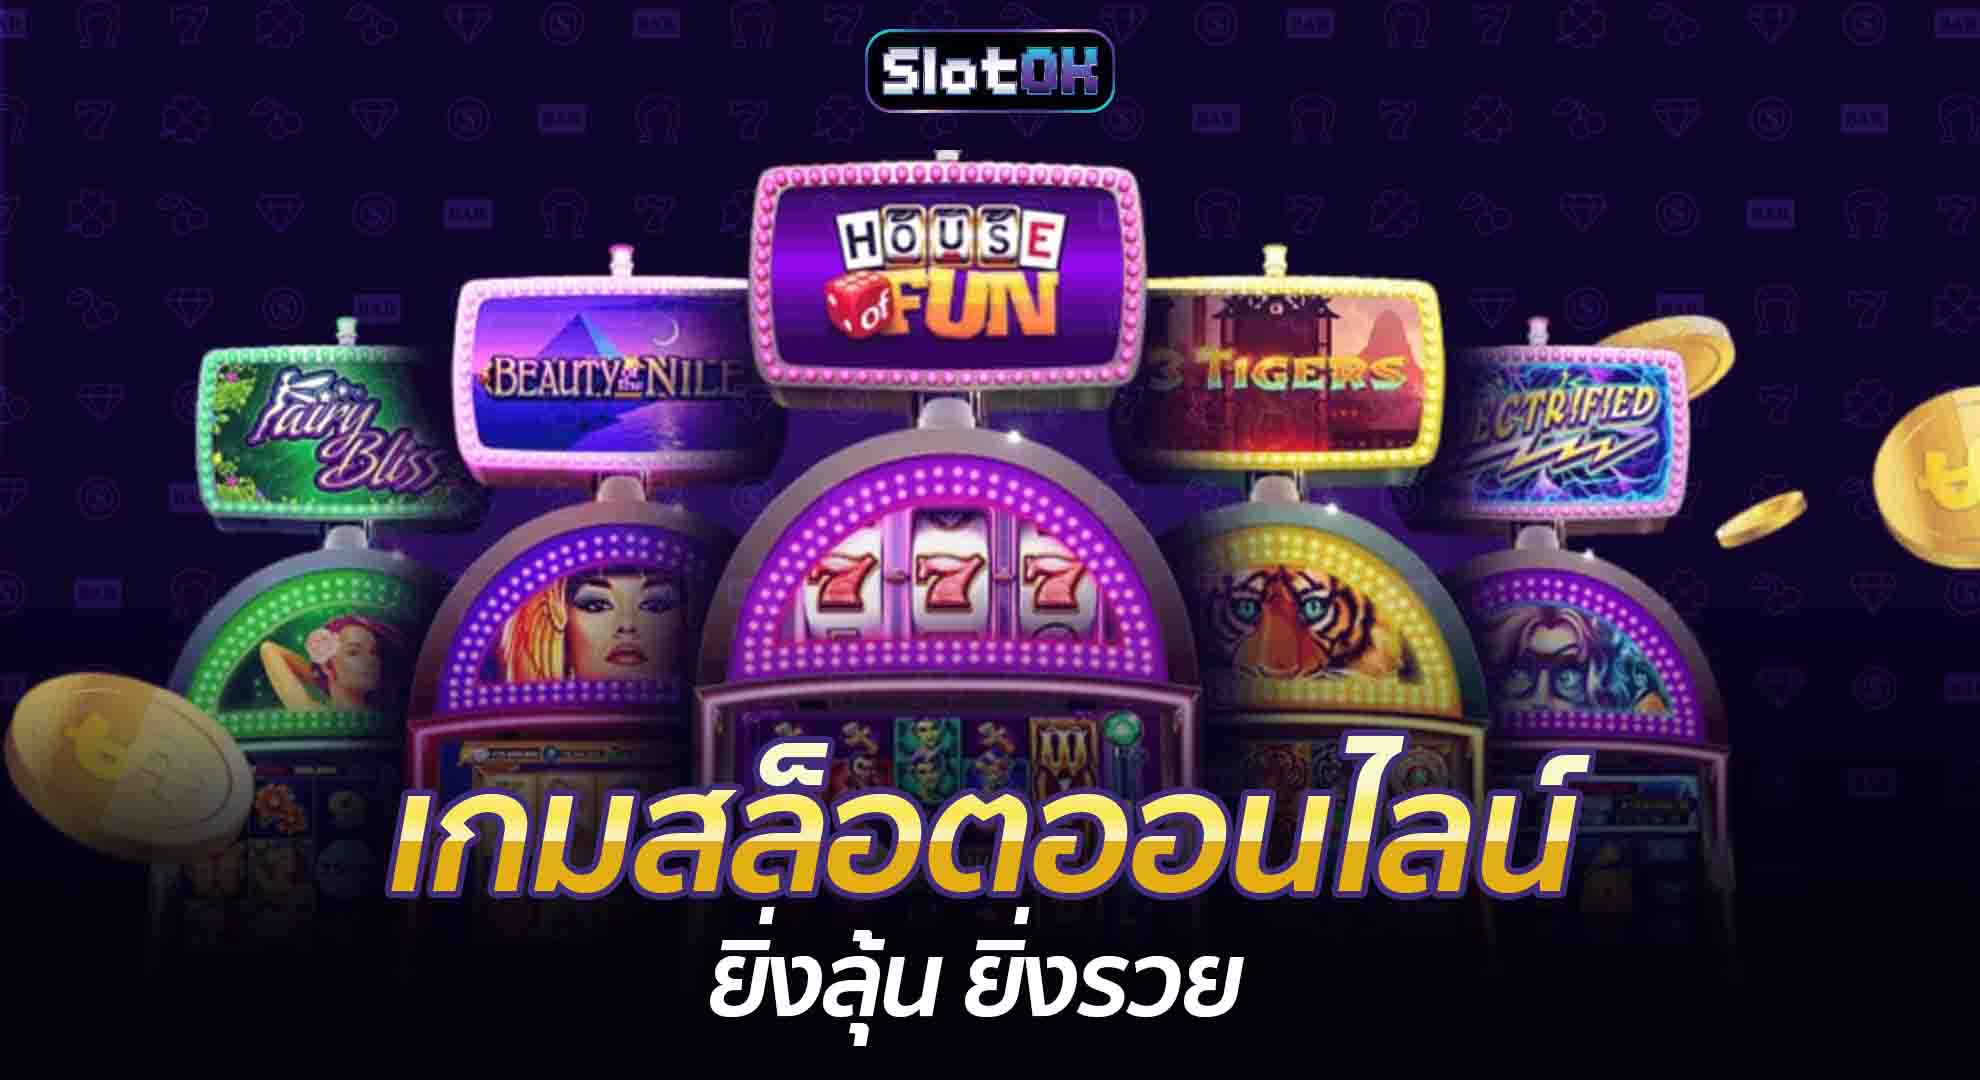 เกมสล็อตออนไลน์ ยิ่งลุ้น ยิ่งรวย SlotOK สล็อตออนไลน์ โปรโมชั่นสล็อต สมัครสล็อต สล็อตโอเค ทางเข้าเล่นสล็อต สมัครสมาชิก ทางเข้าเล่น Slot โปรโมชั่น เกมสล็อต OK PG Slot